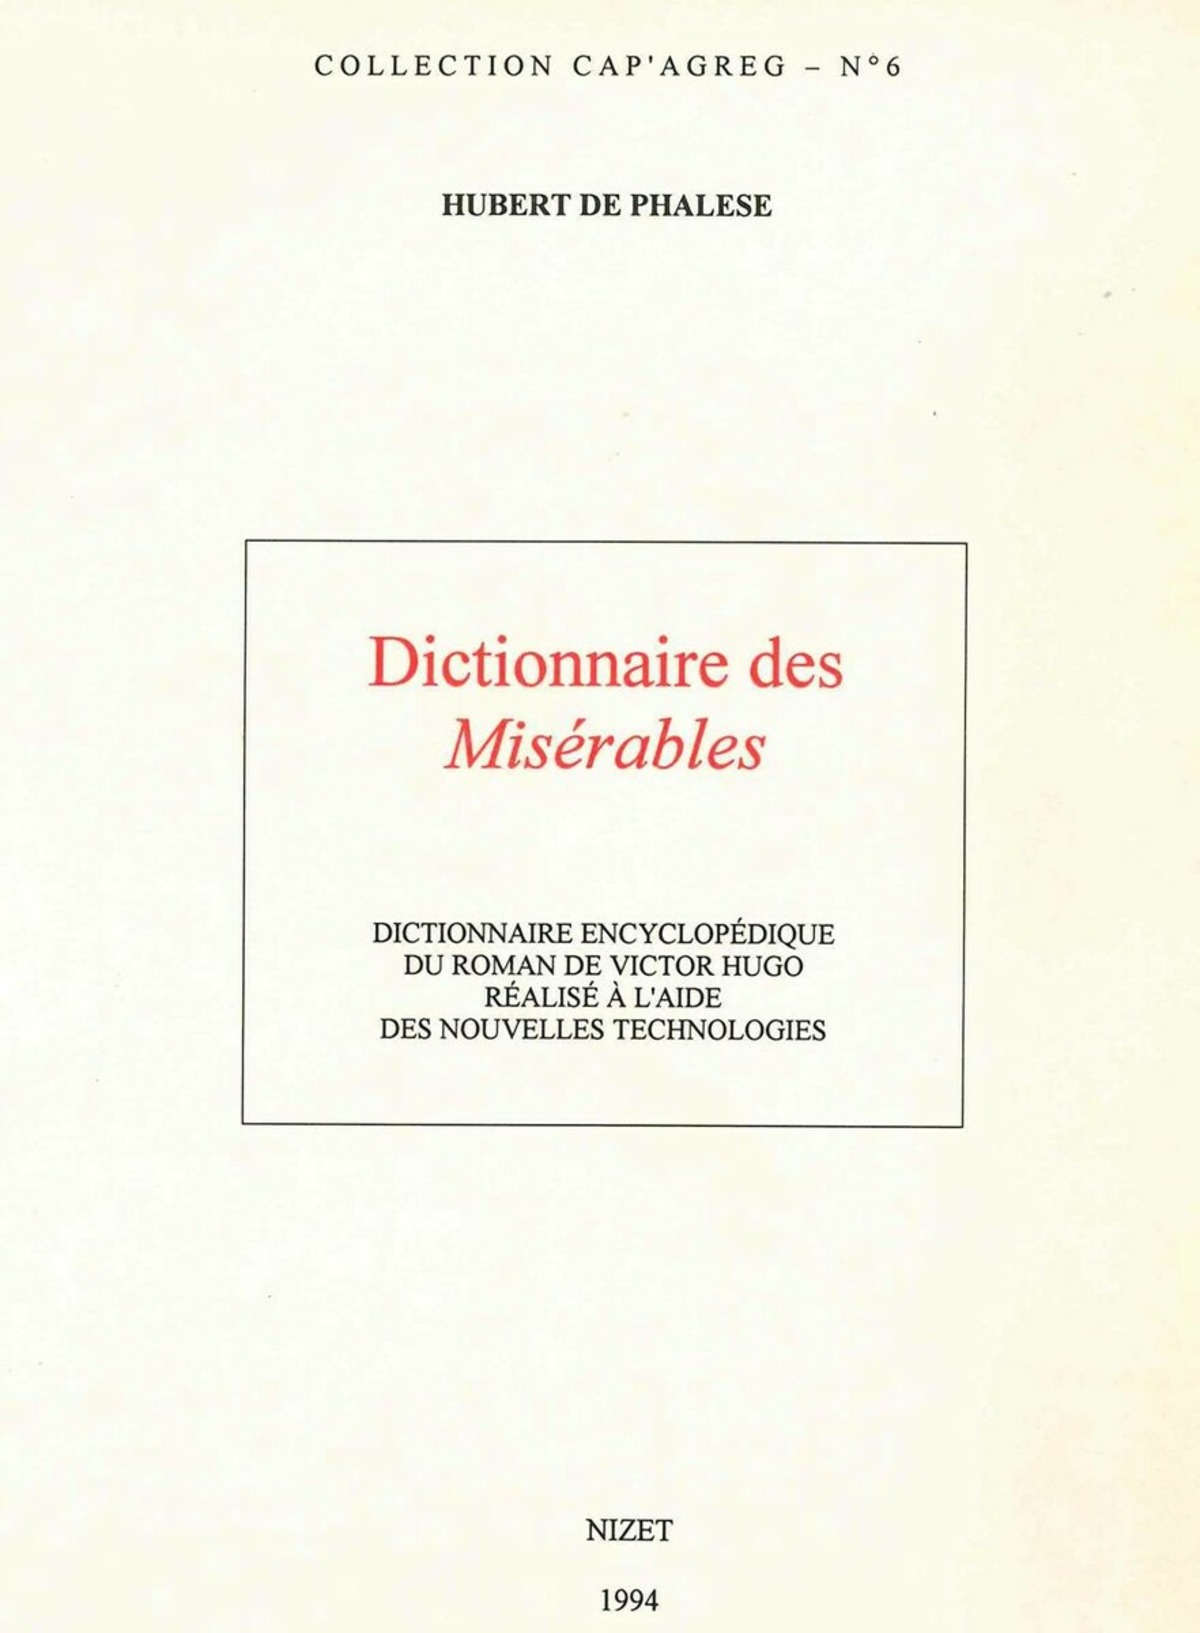 Dictionnaire des Misérables